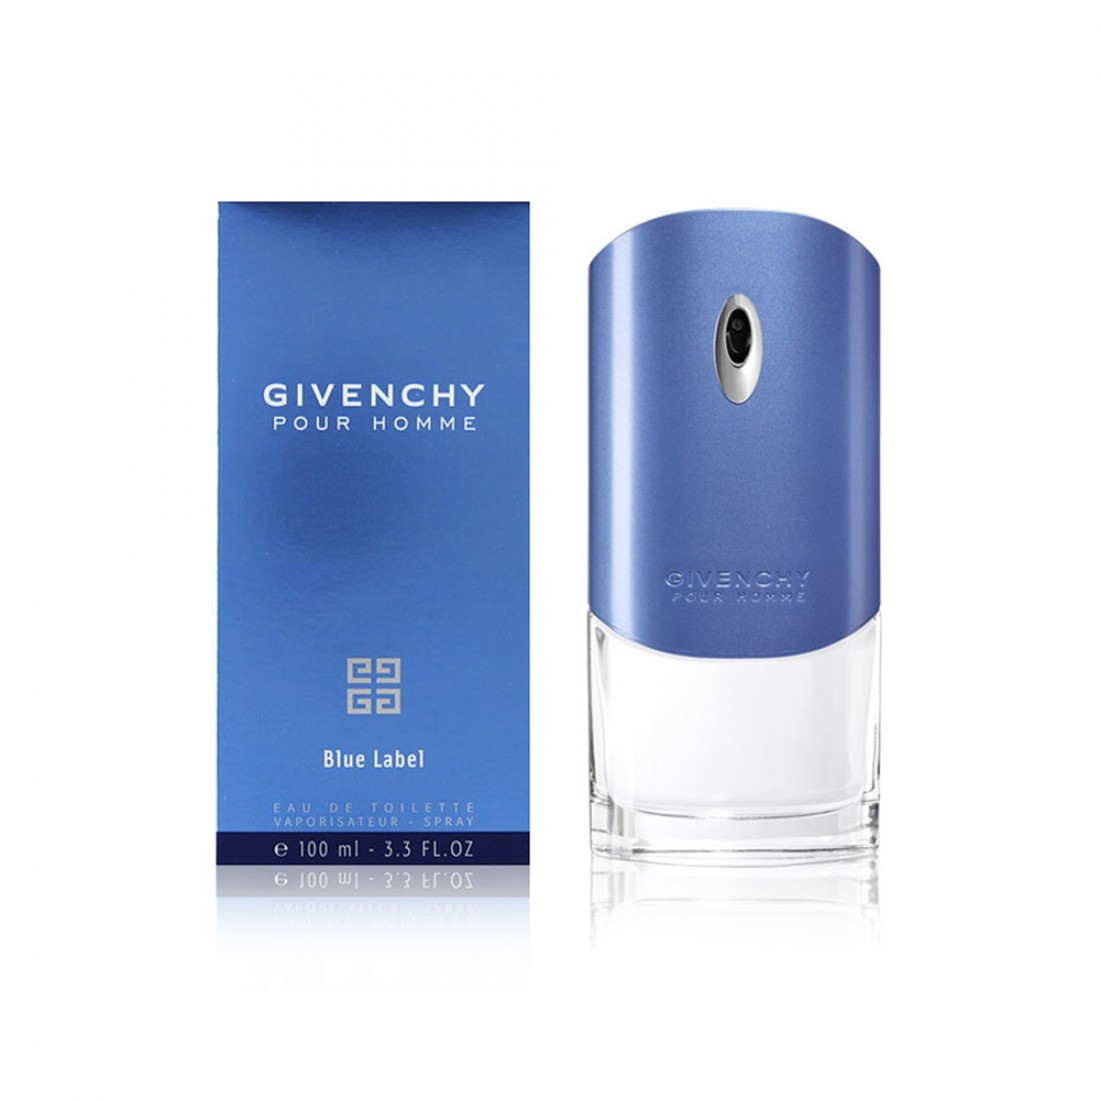 Perfume Givenchy Pour Homme Blue Label - Eau de Toilette 100 ml - عطر